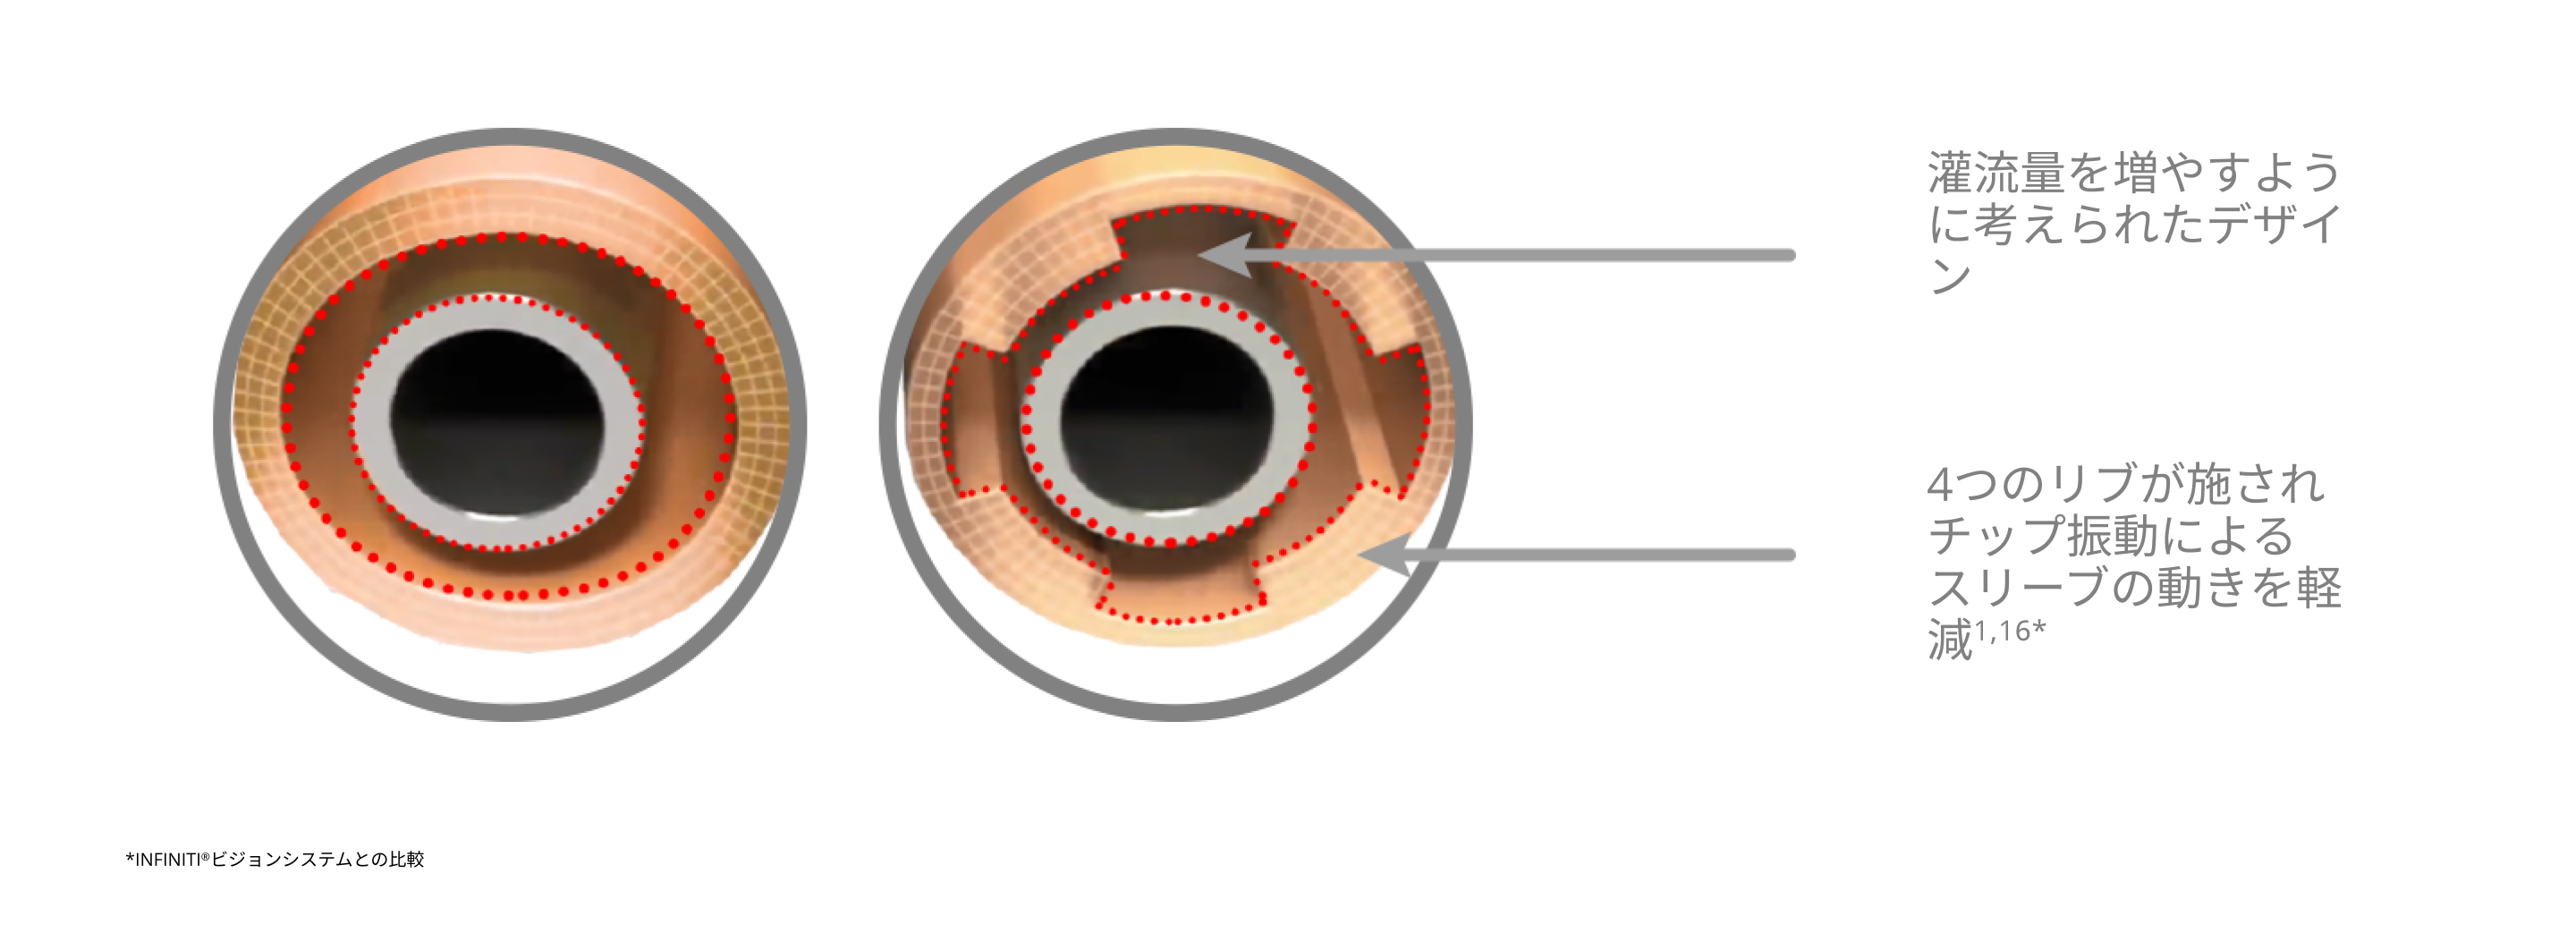 INFINITI Vision Systemと比較してスリーブの動きを抑え、灌流量を増加させる4リブスリーブデザインのINTREPIDスリーブを紹介するイメージ図